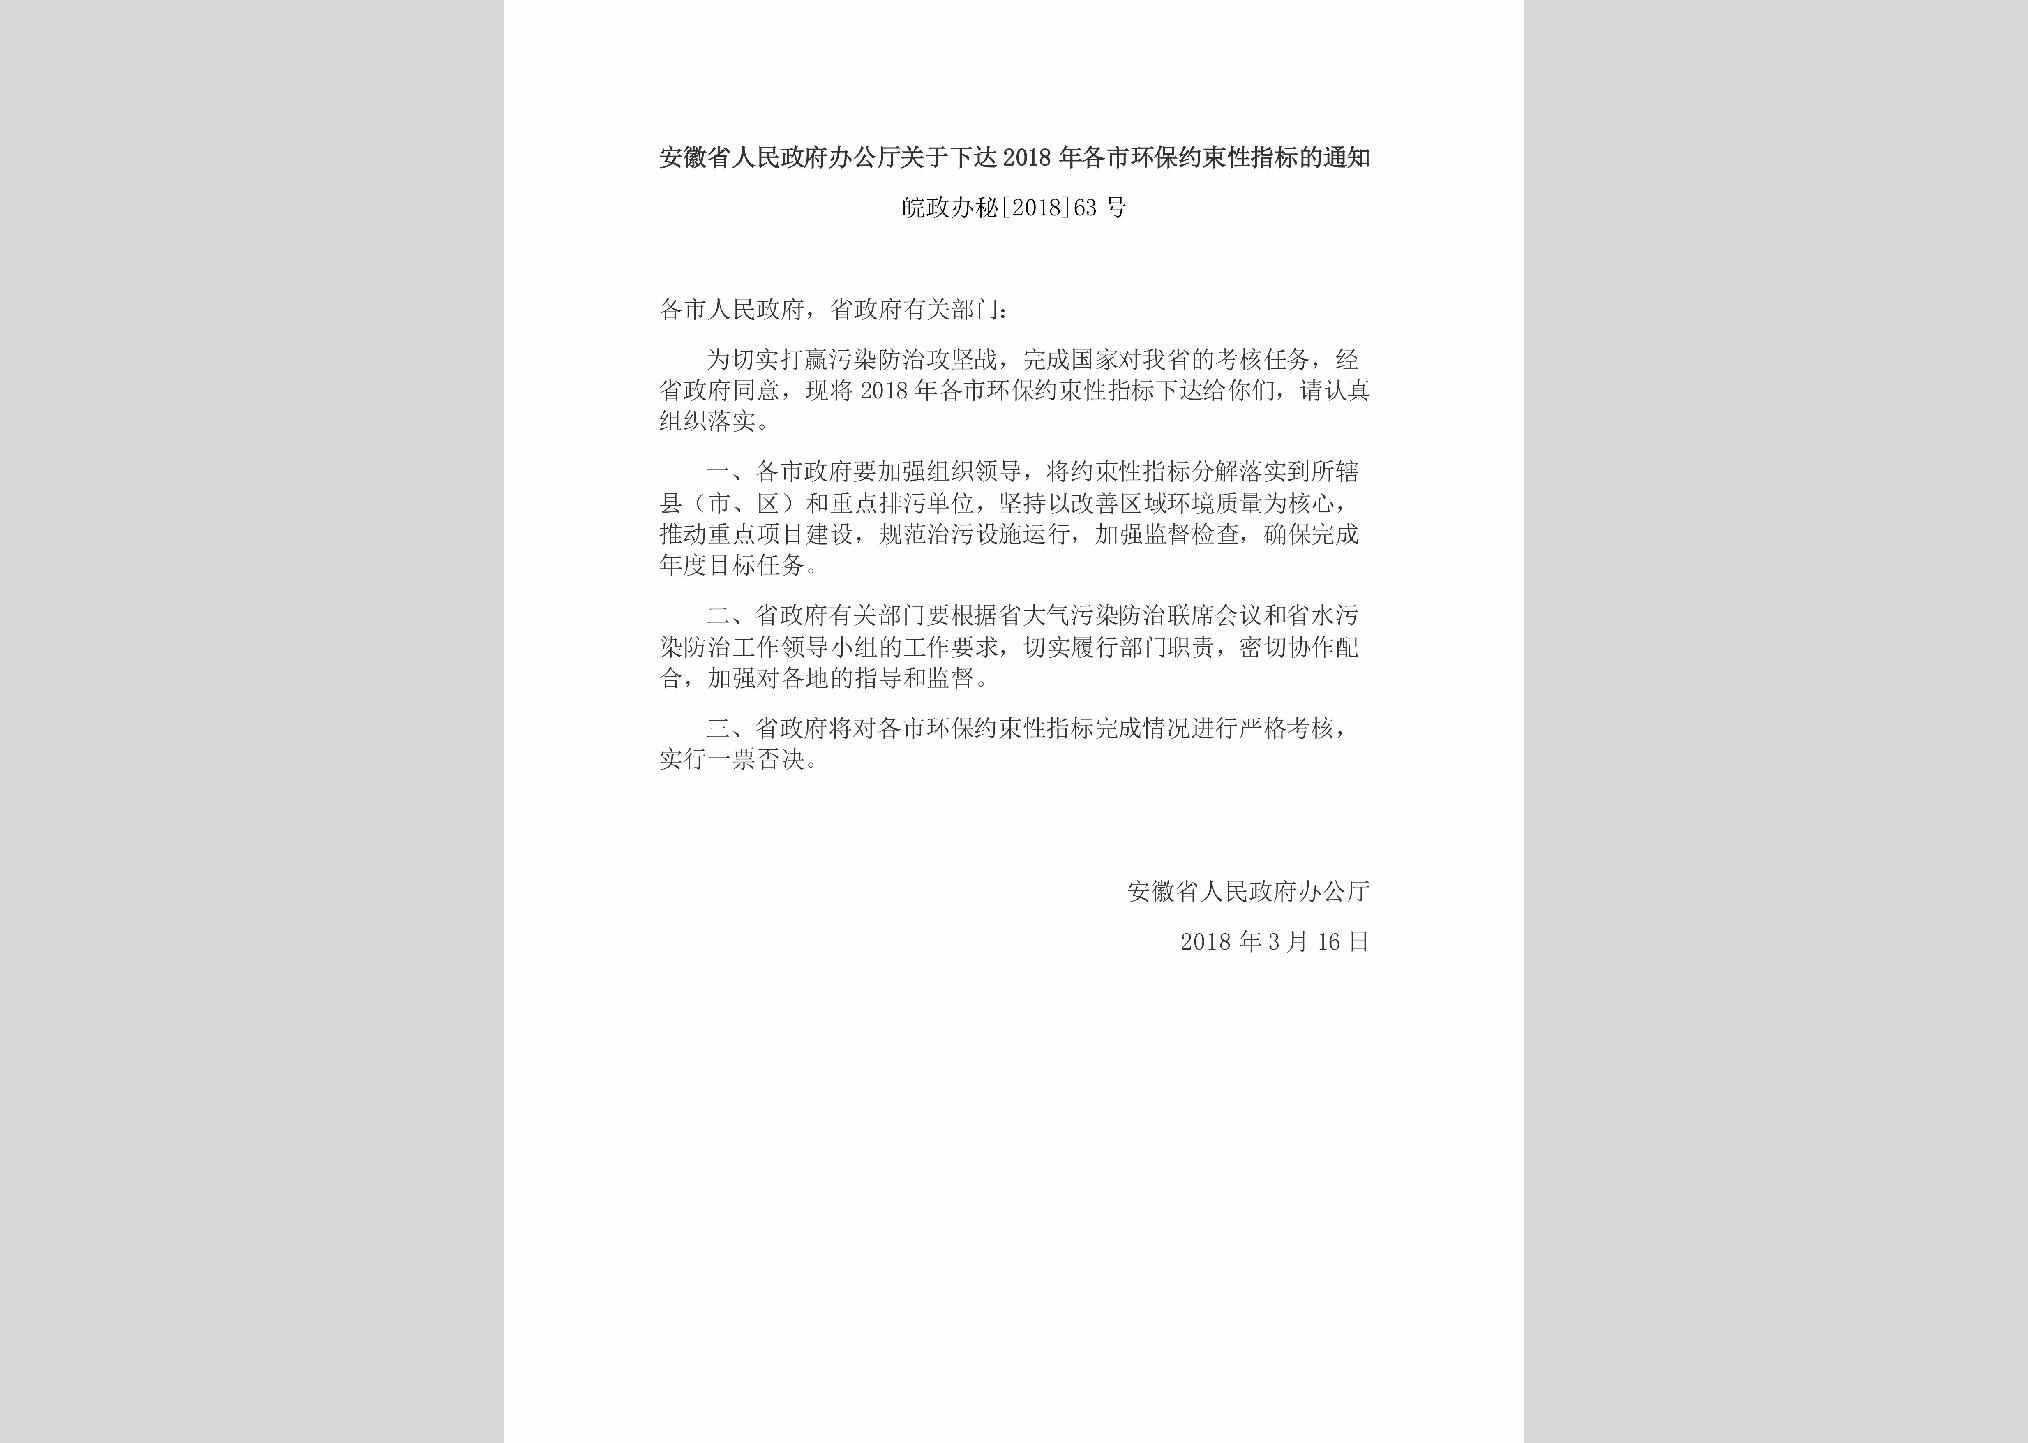 皖政办秘[2018]63号：安徽省人民政府办公厅关于下达2018年各市环保约束性指标的通知